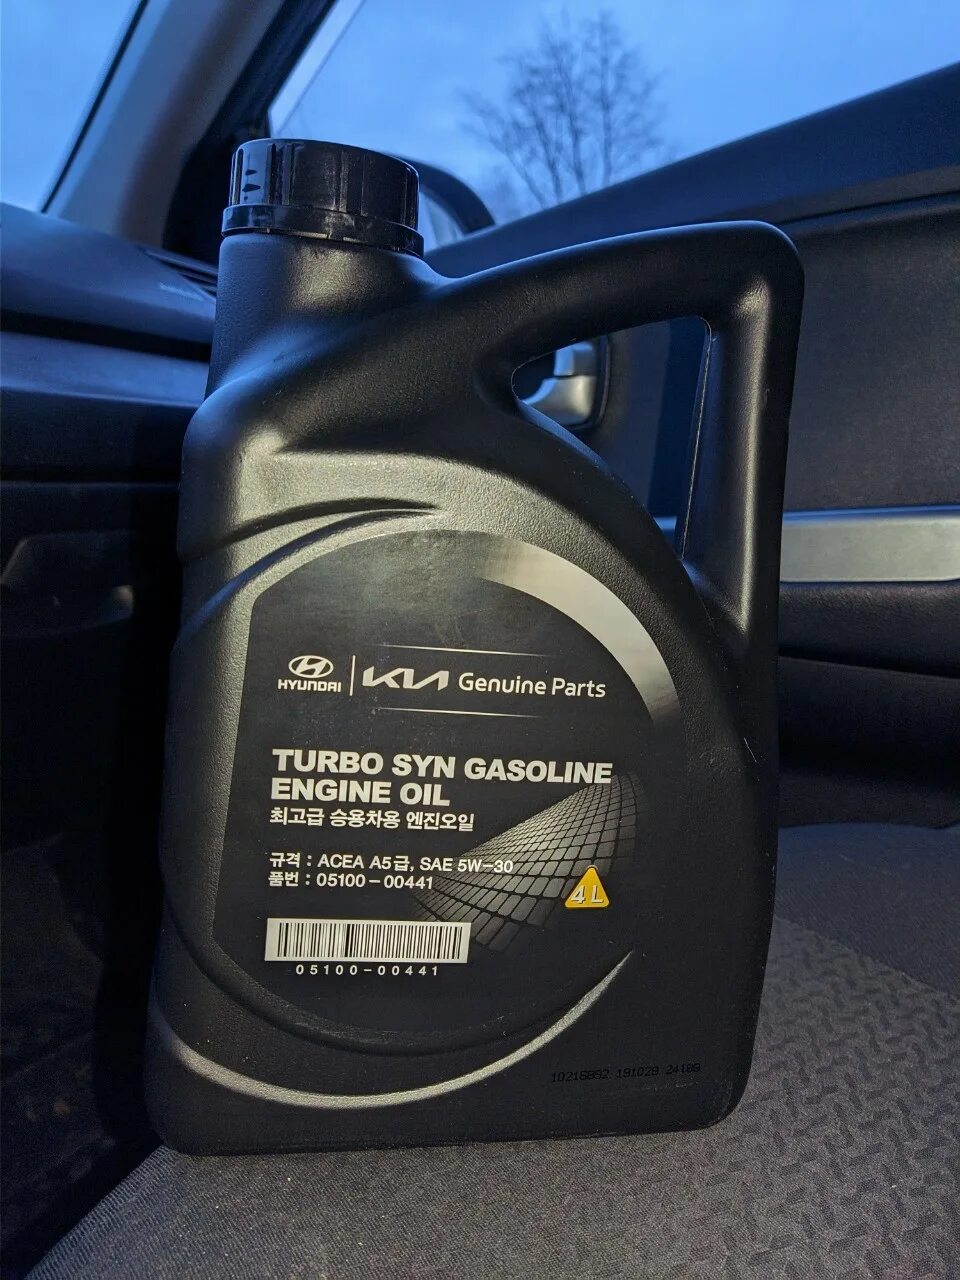 Hyundai Turbo gasoline 5w-30. Hyundai Turbo syn gasoline 5w-30. Масло Hyundai 5w30 Turbo syn. Kia Turbo syn 5w30. Масло хендай 5в30